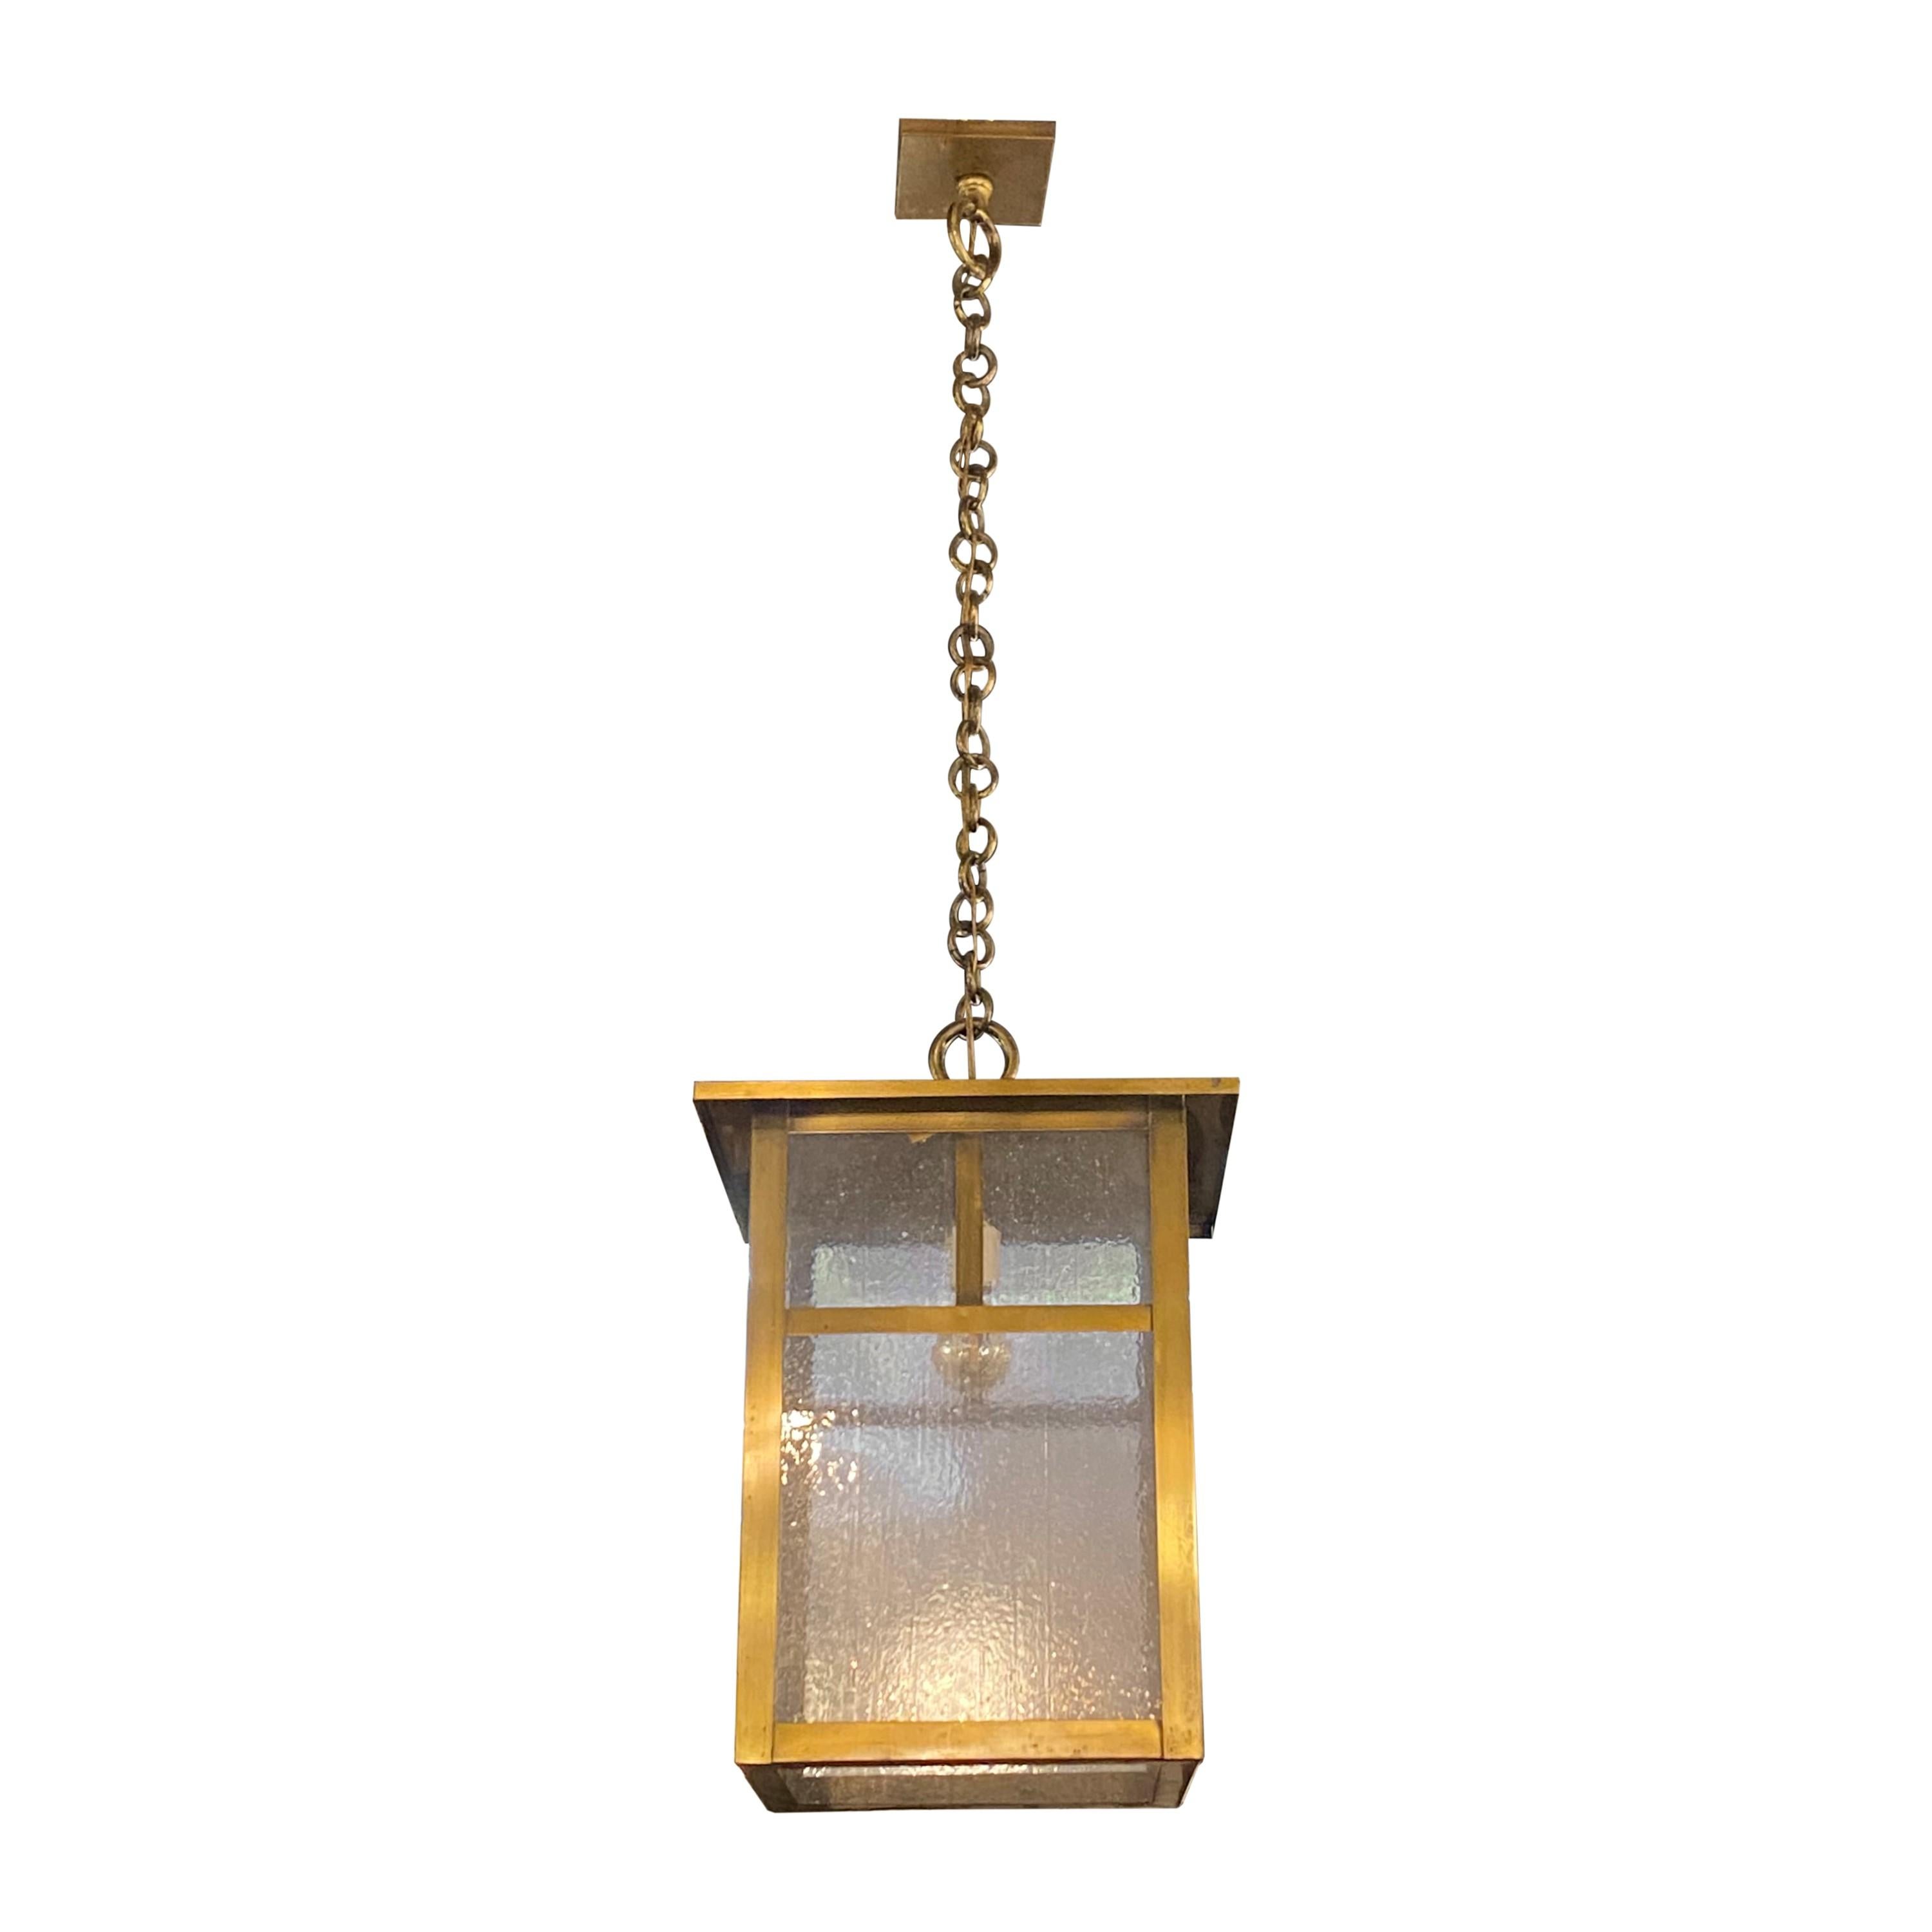 Lampe suspendue Arts & Crafts du début du 20e siècle, nettoyée et restaurée, avec un design de lanterne. Il est doté d'abat-jour en verre texturé transparent et d'un dôme de plafond carré assorti. Convient à une ampoule domestique standard E26.